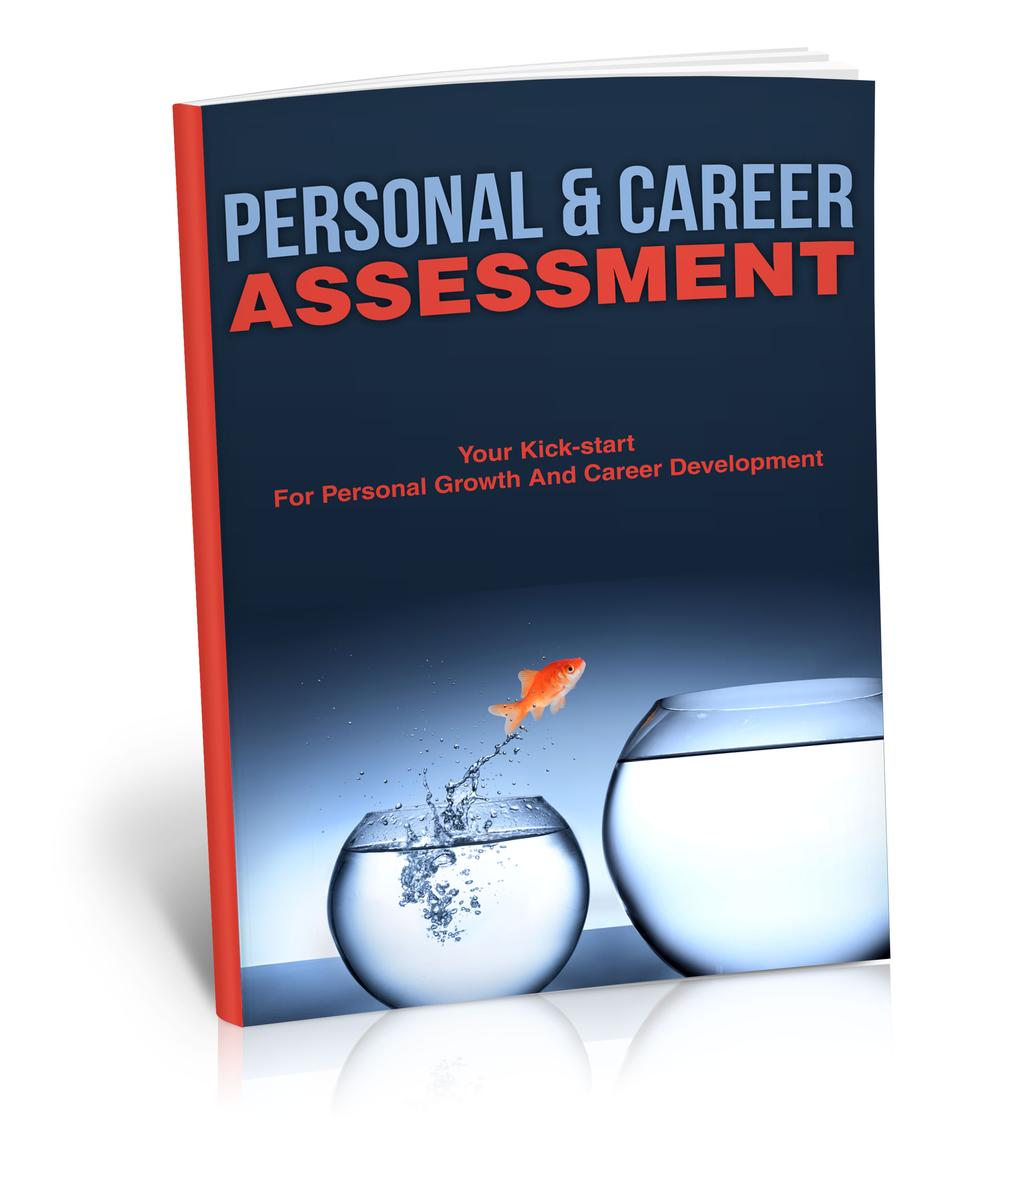 Aan de slag Deze personal & career assessment behandelt 6 thema s, met ieder 5 stellingen. Bij elke stelling kun je een score van 1 tot 10 noteren, oftewel jezelf een rapportcijfer geven.